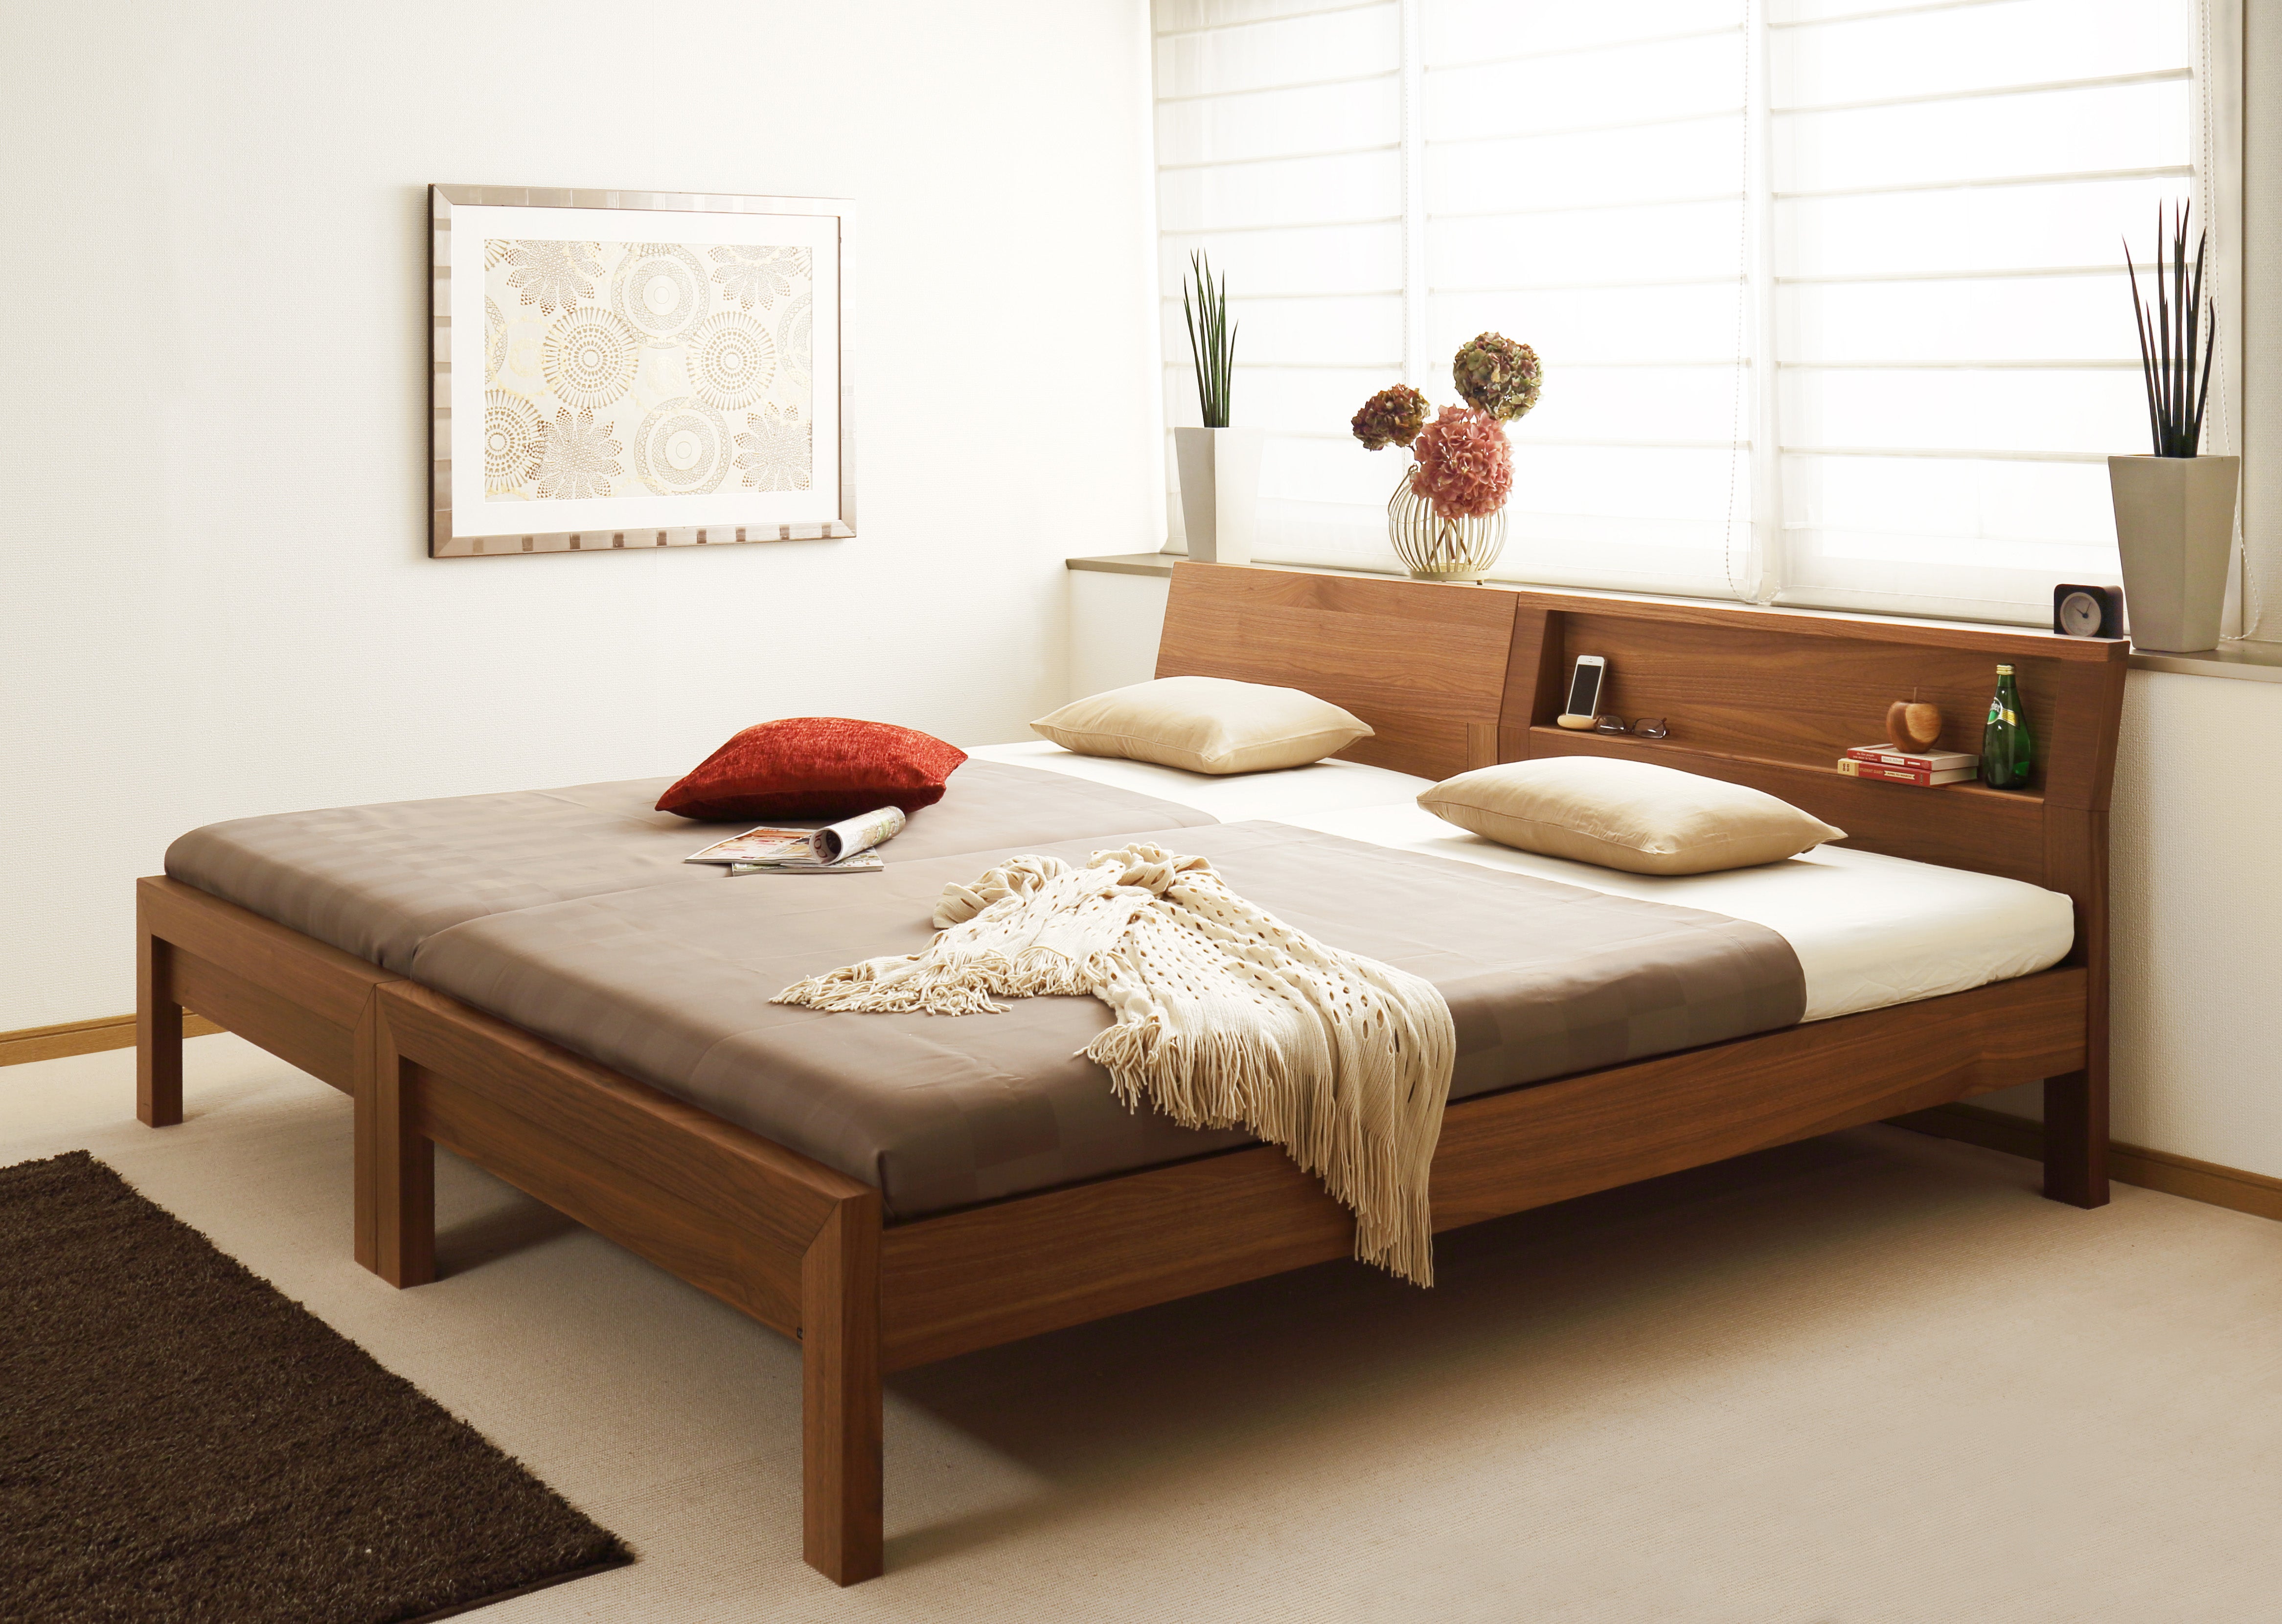 ライフスタイルに合わせて選べるカリモクのベッド。